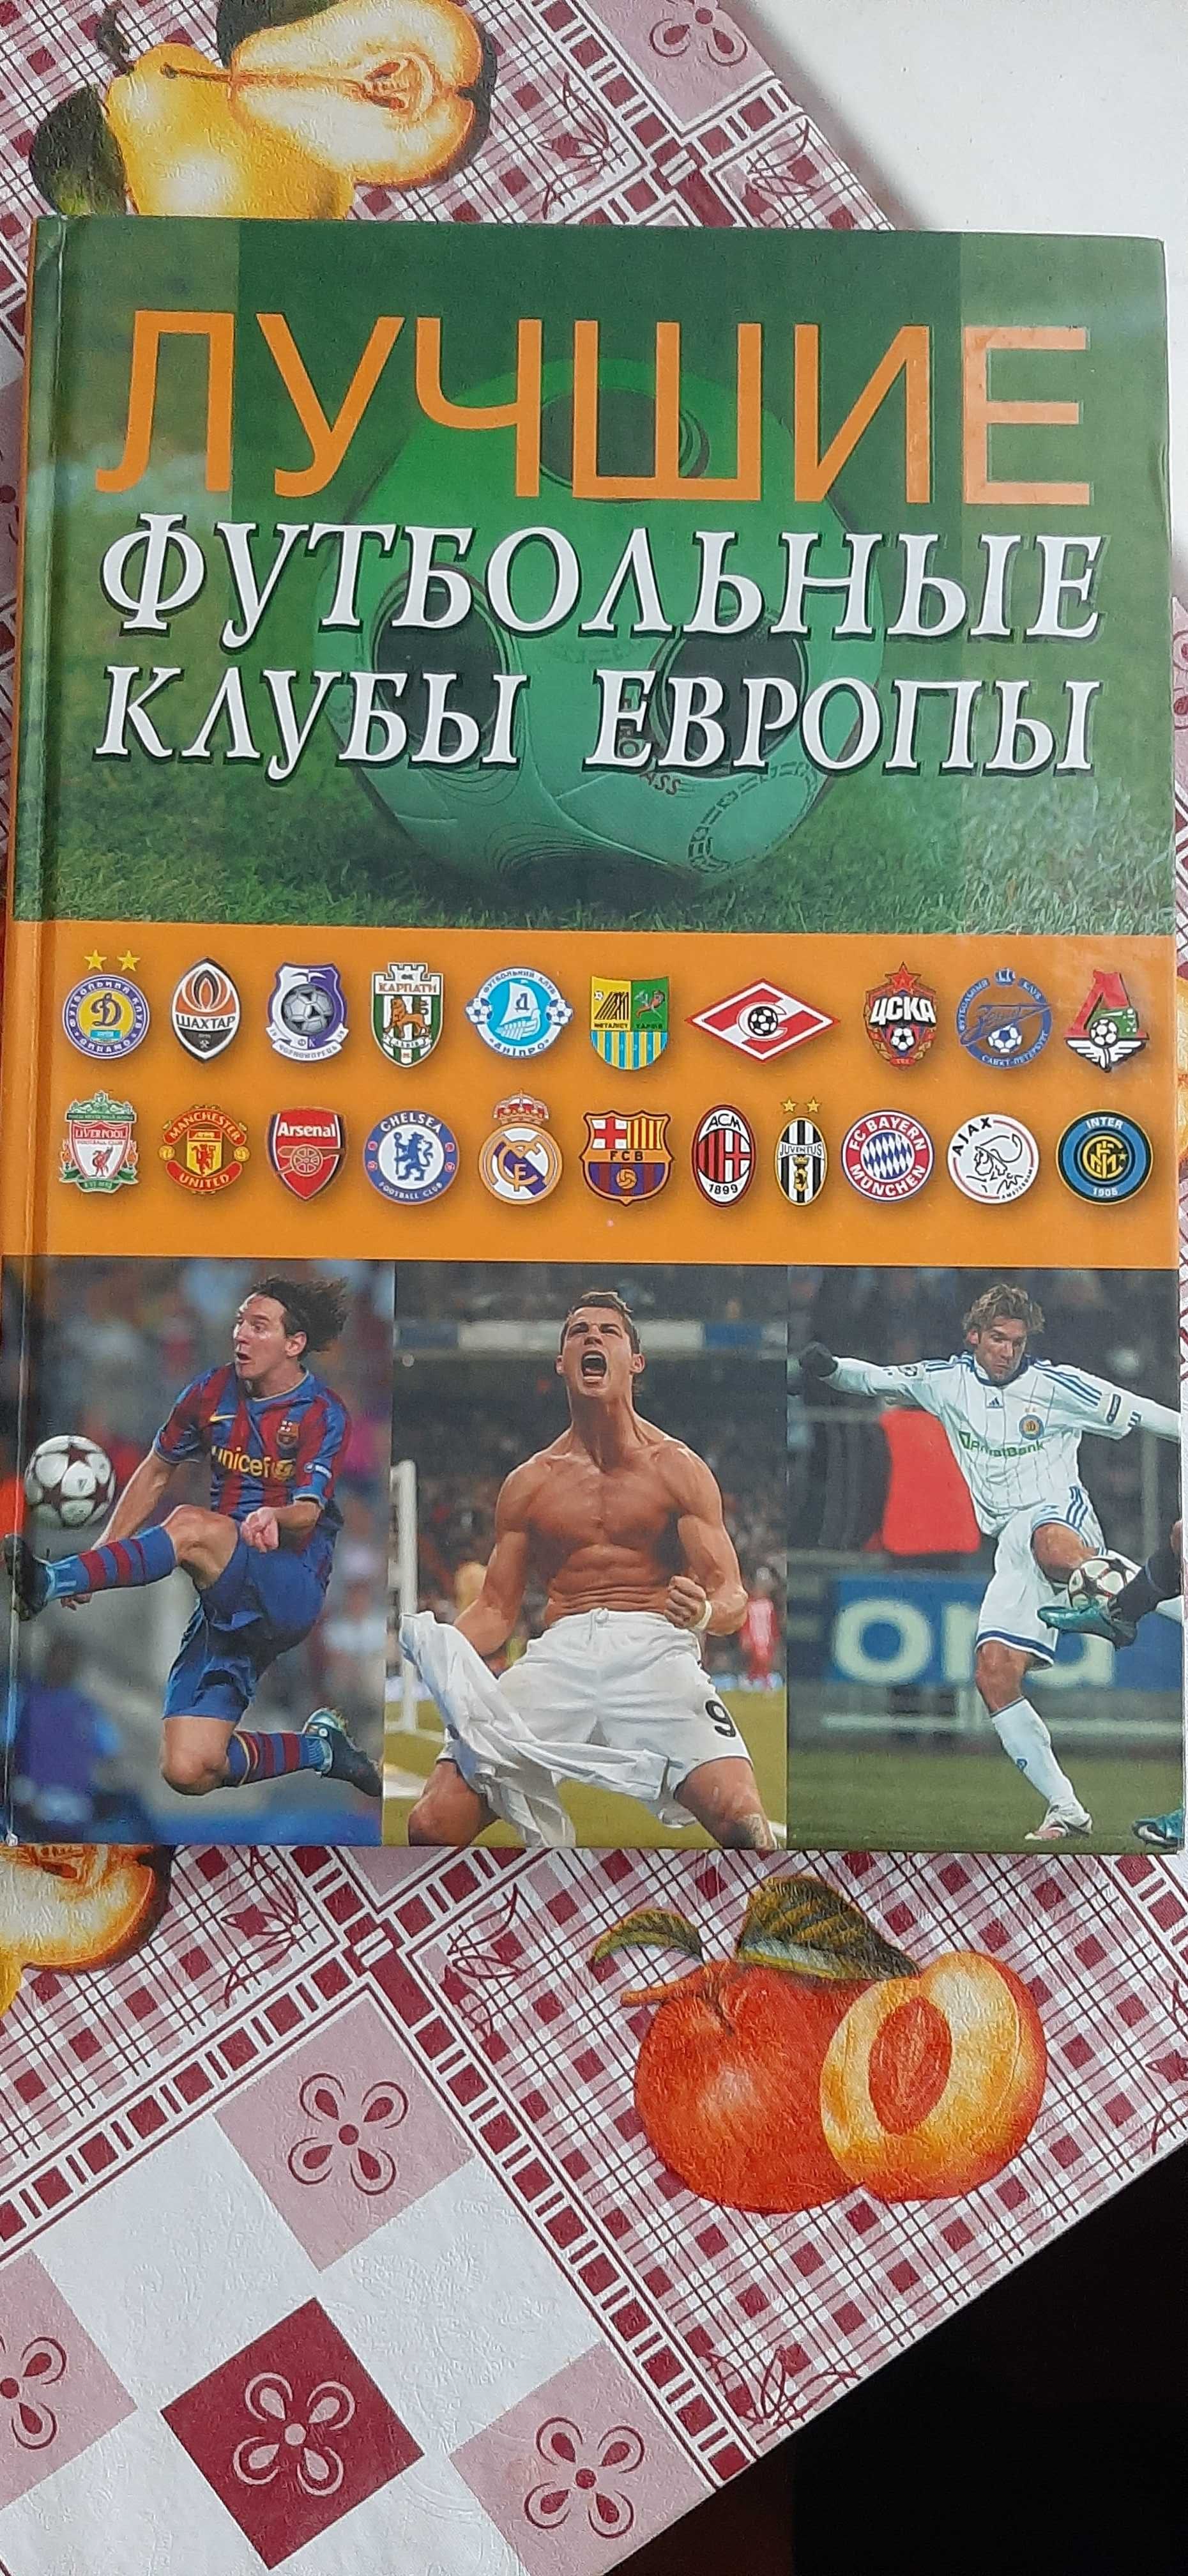 Футбол. Серия книг о футболе в 3-х томах (Изд-во Pelican)